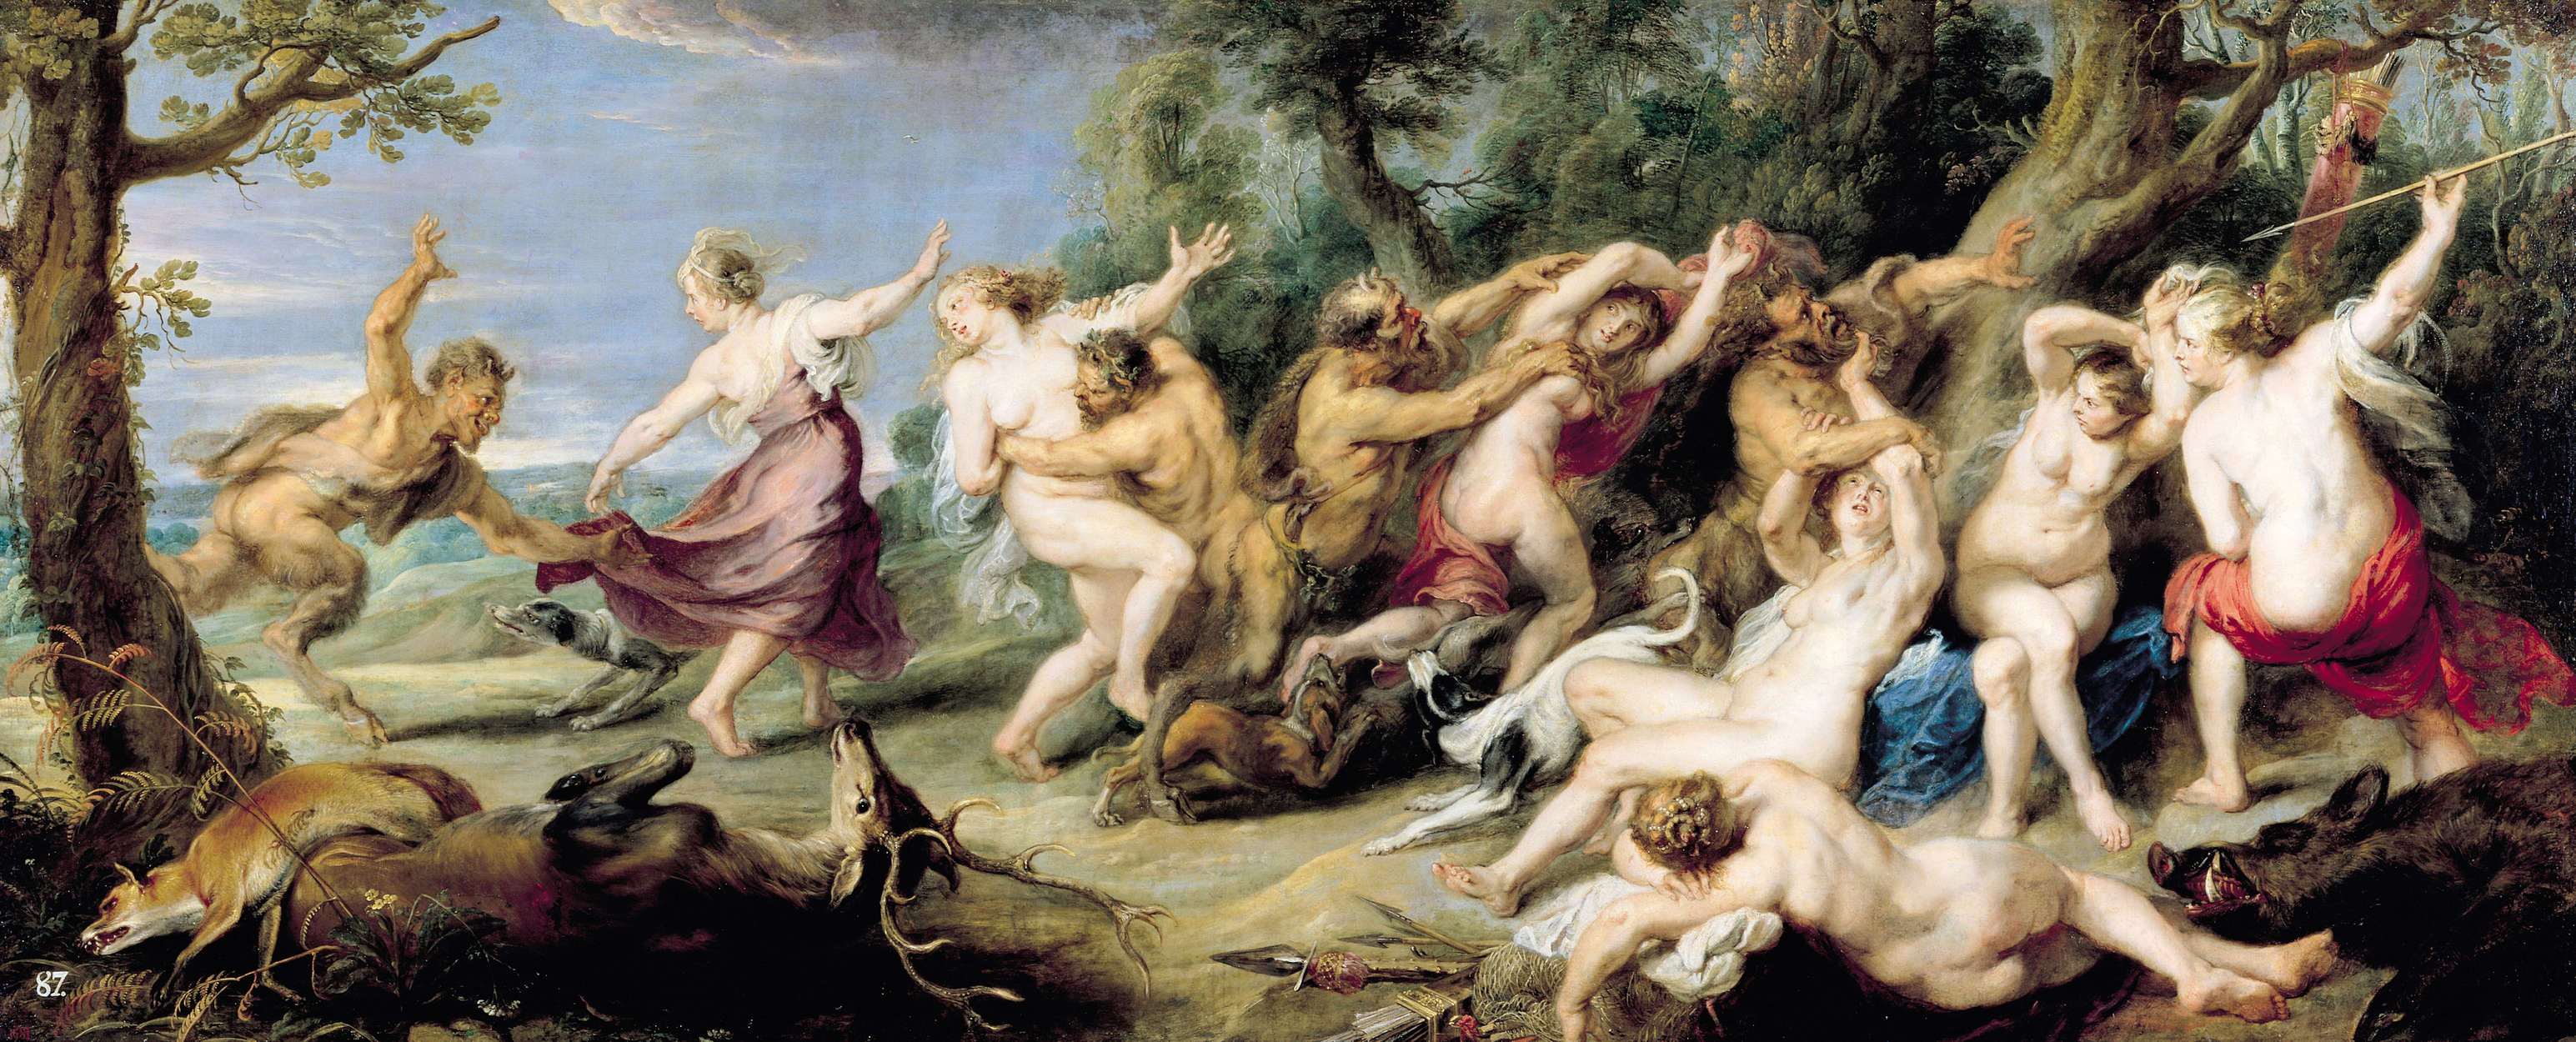             Papier peint "Diane et ses nymphes à la chasse" de Peter Paul Rubens
        